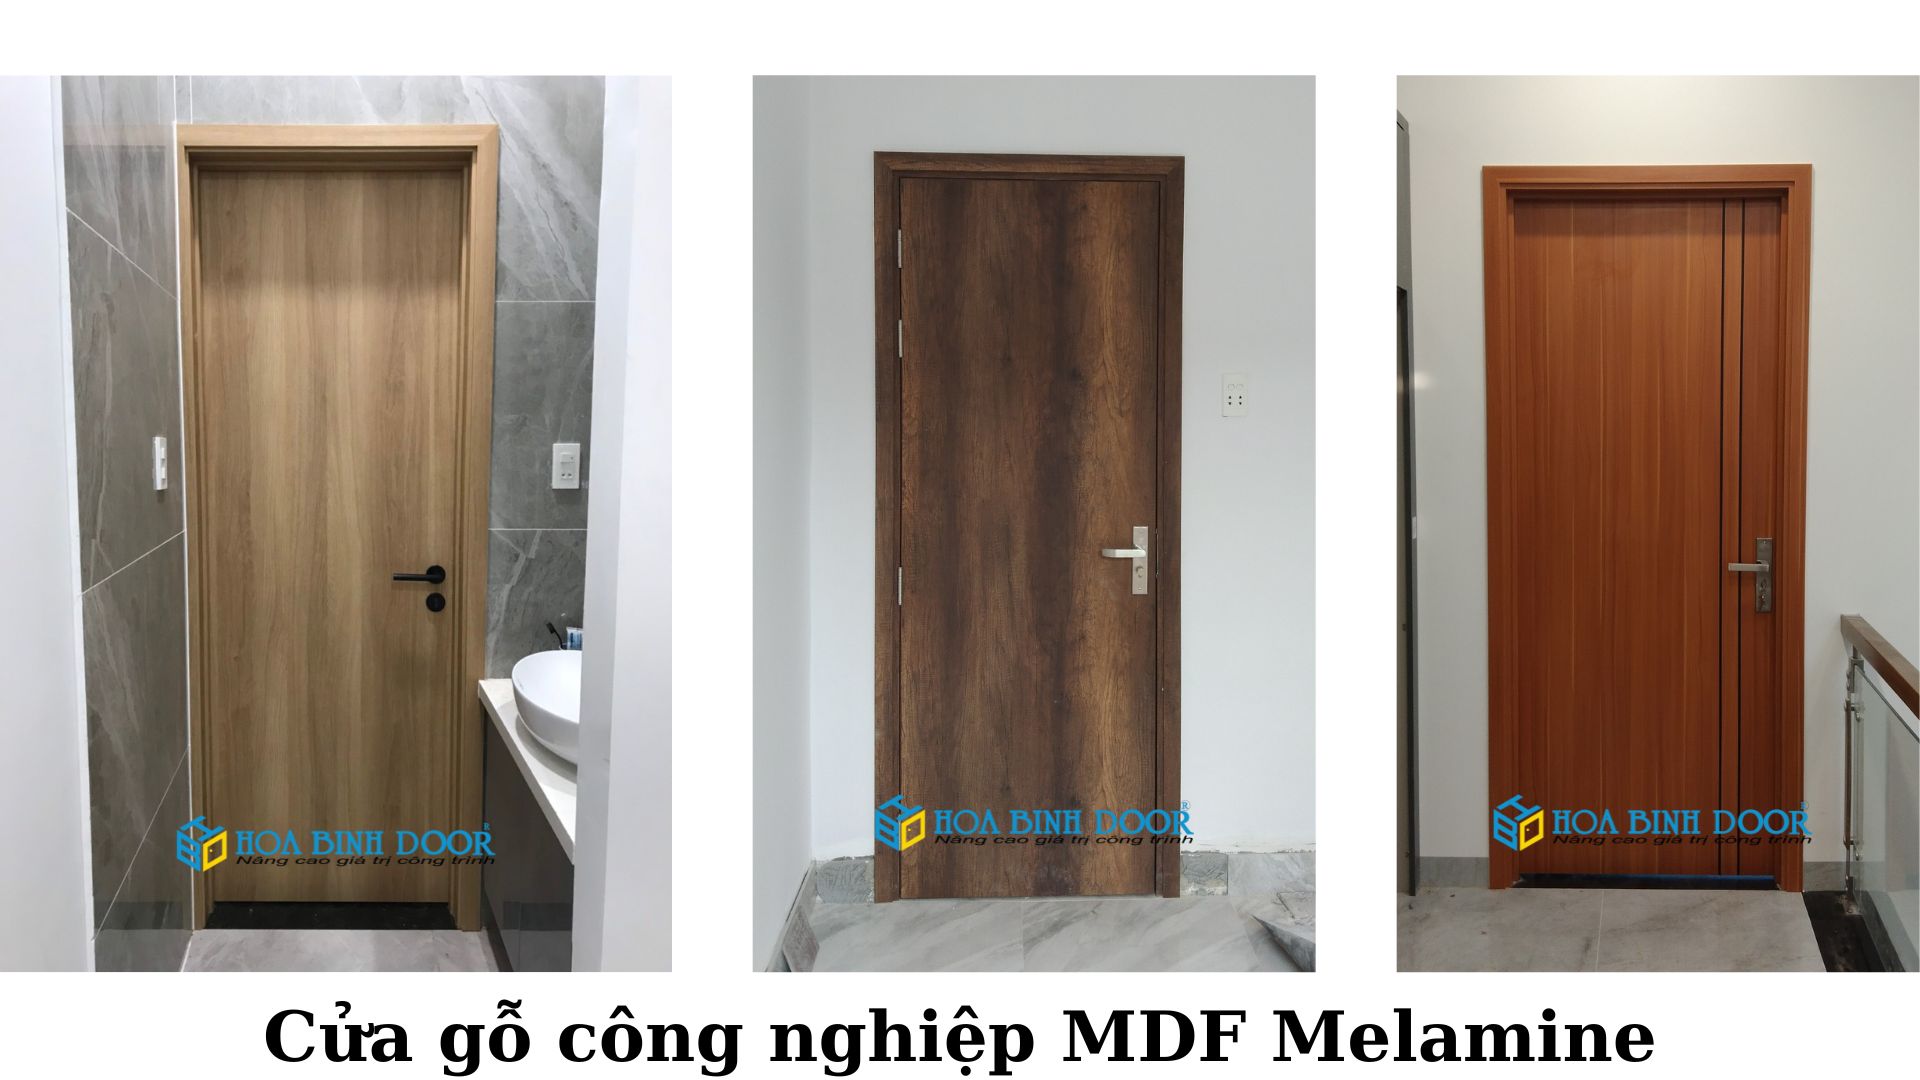 Cửa MDF Melamine tại Bình Thạnh - Cửa gỗ An Cường